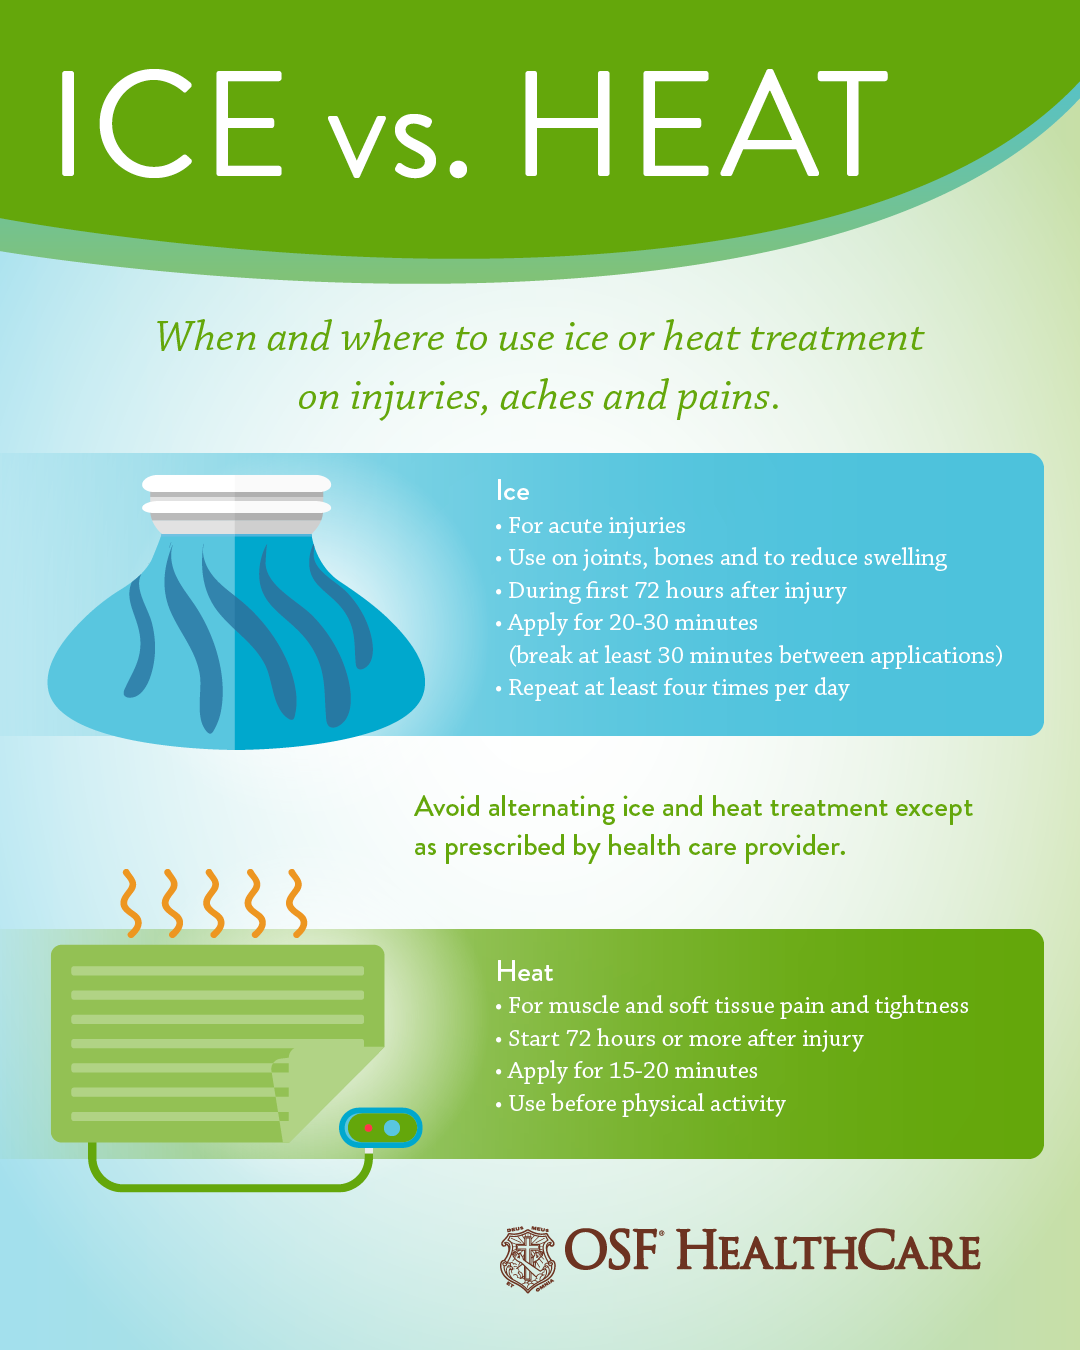 Ice and Heat Treats Back Pain